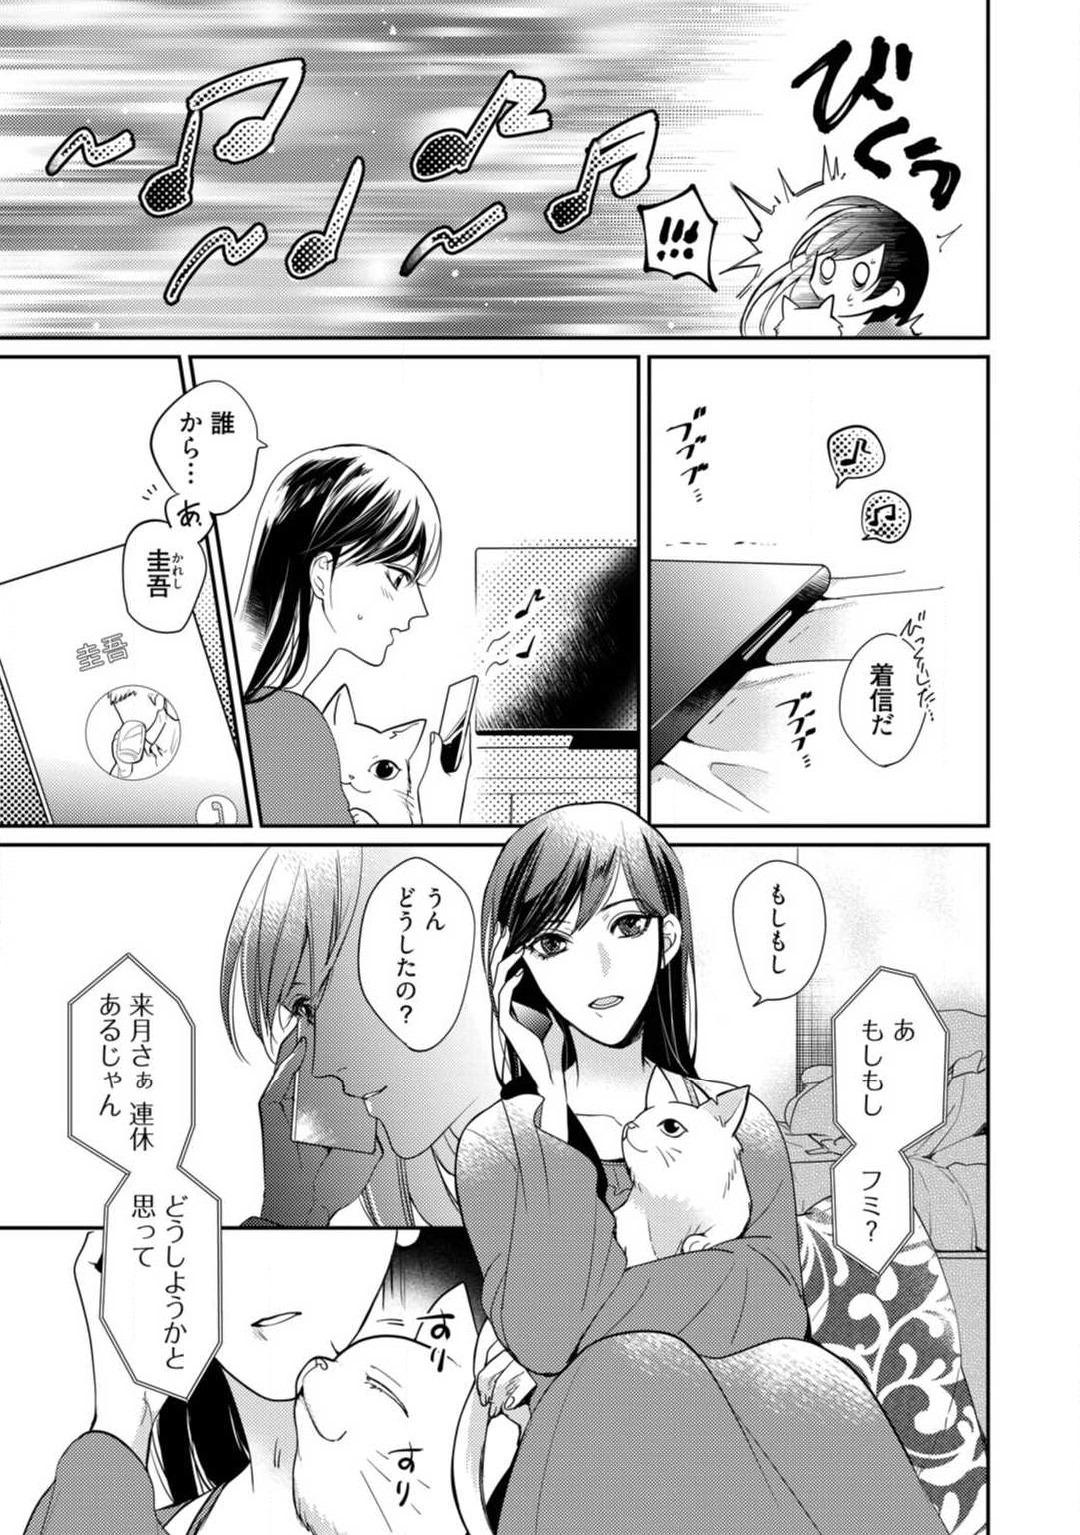 Wives [Yoshimi Kiyo] Ai no Kaikata Amaekata ~Shironeko Kareshi wa Watashi no Mune ga Okiniiri~ 1-3 Threesome - Page 10